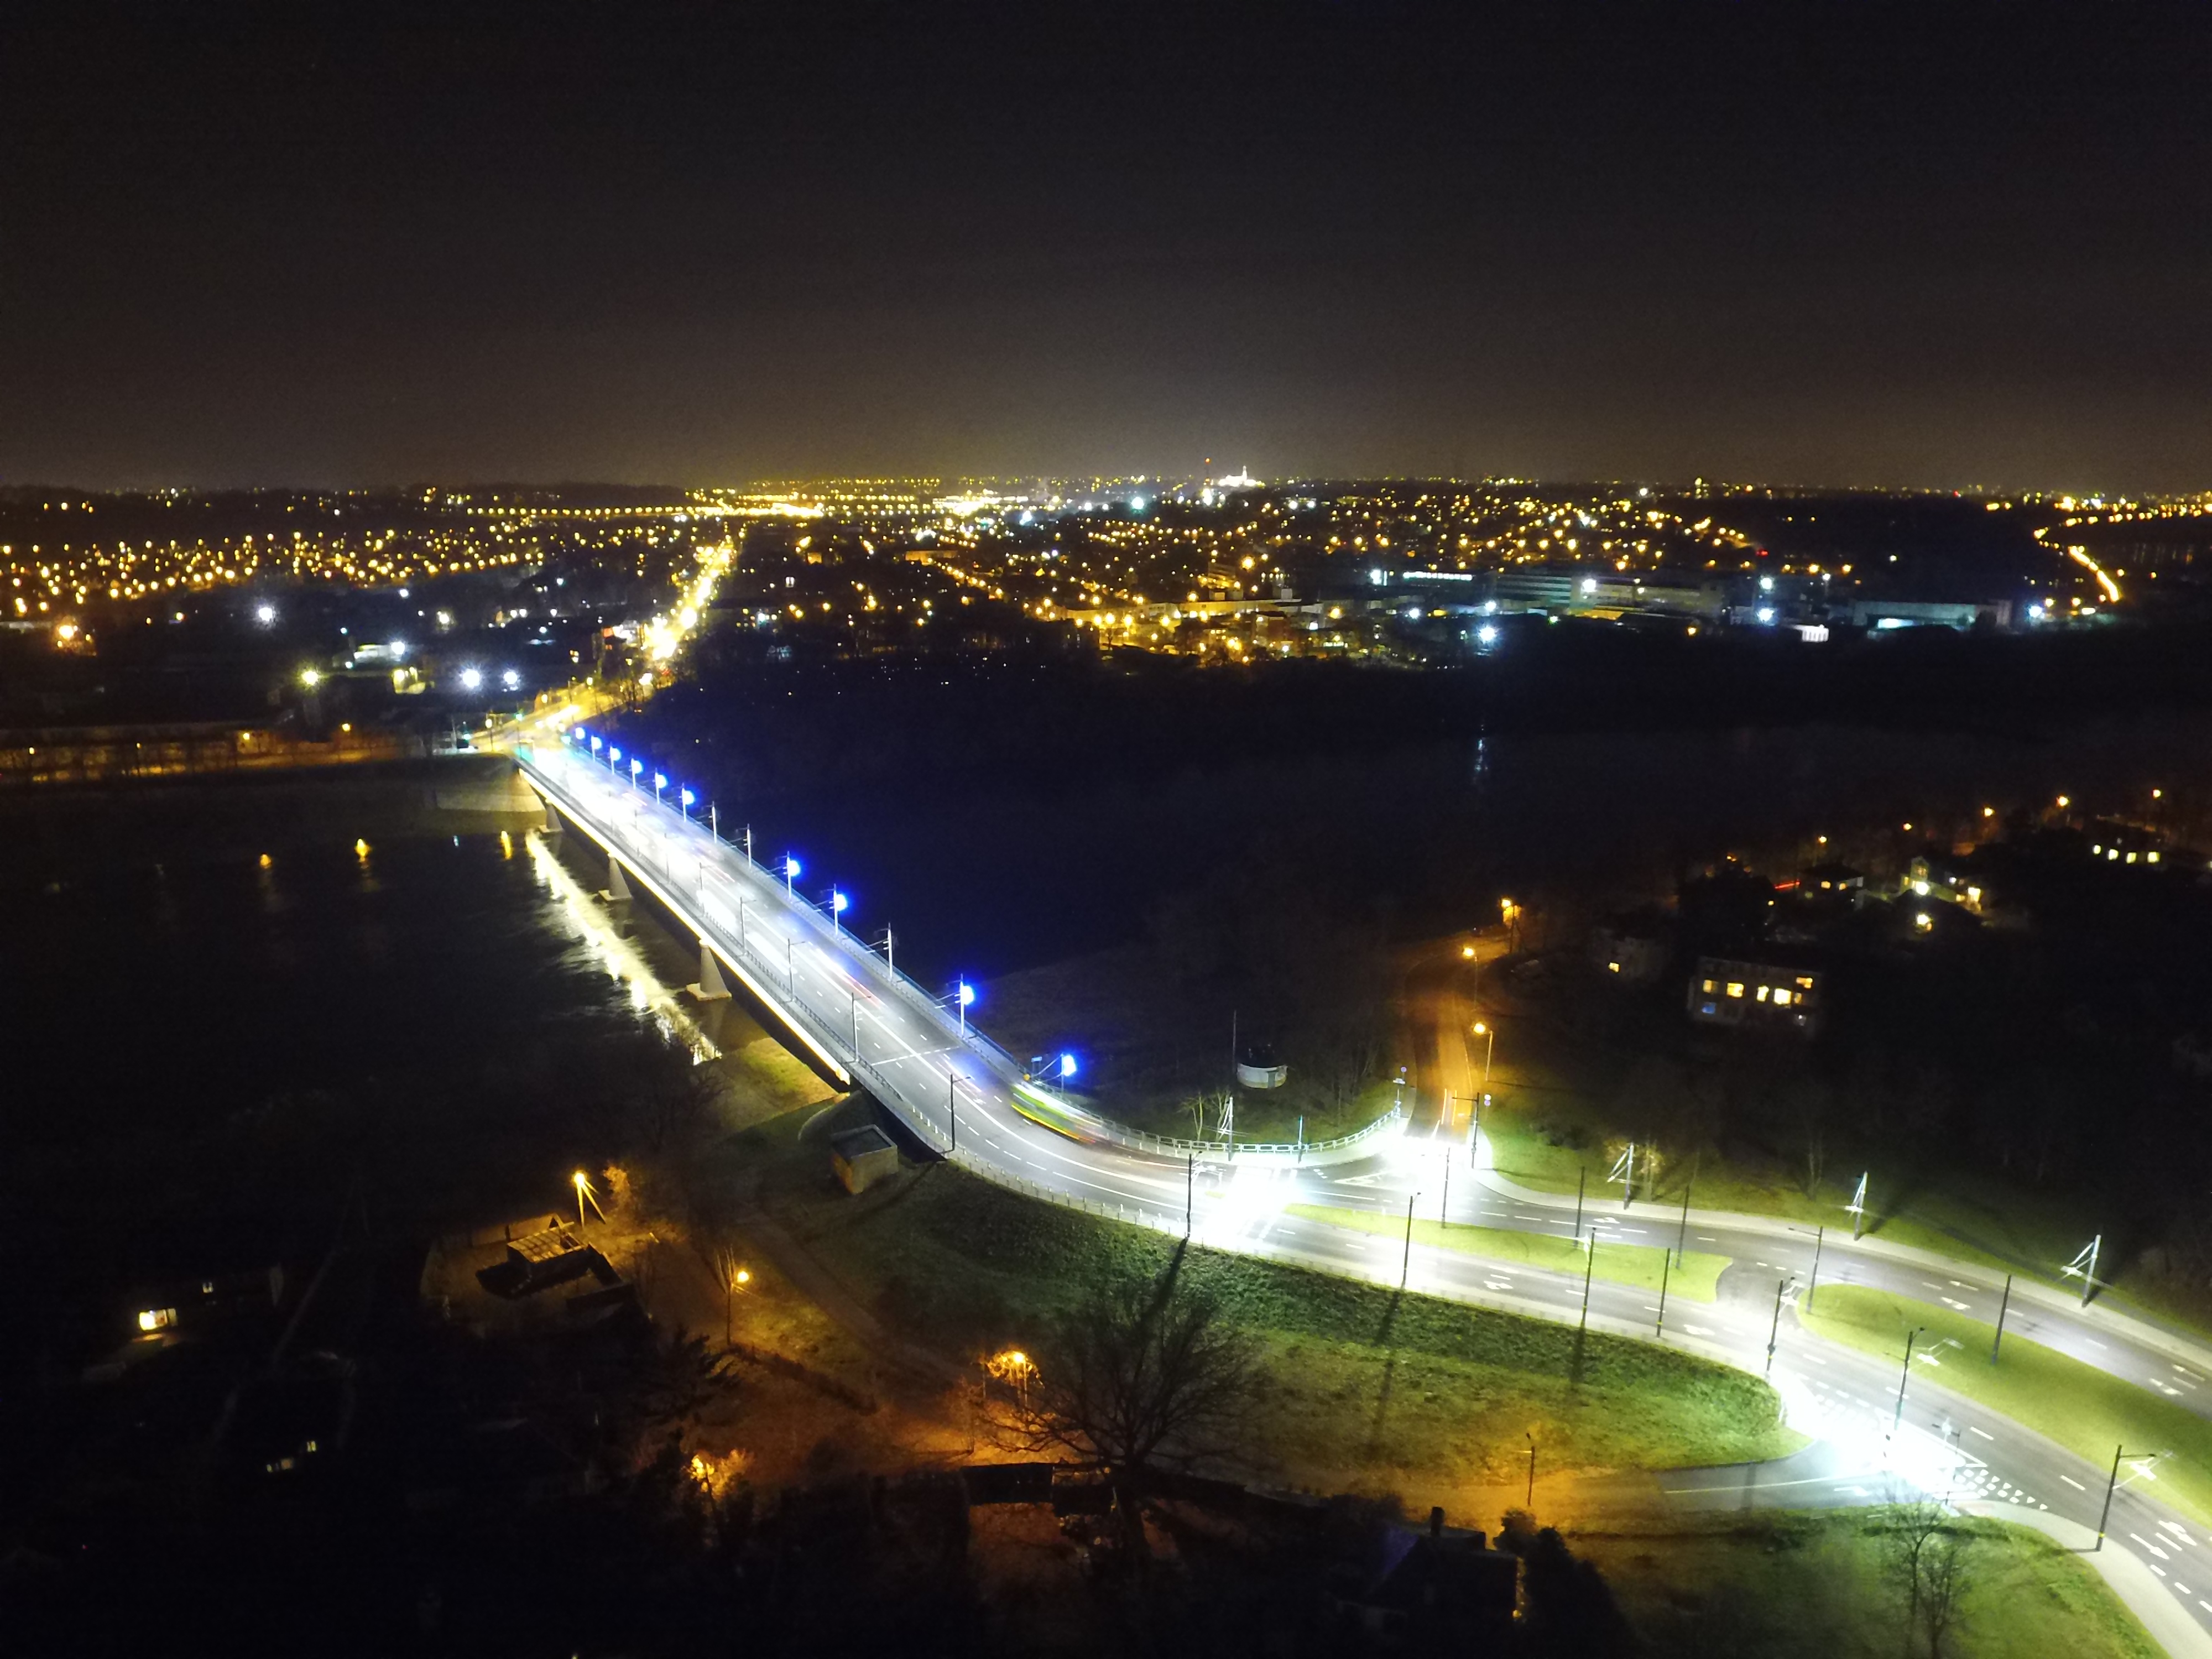 Kaunas at night